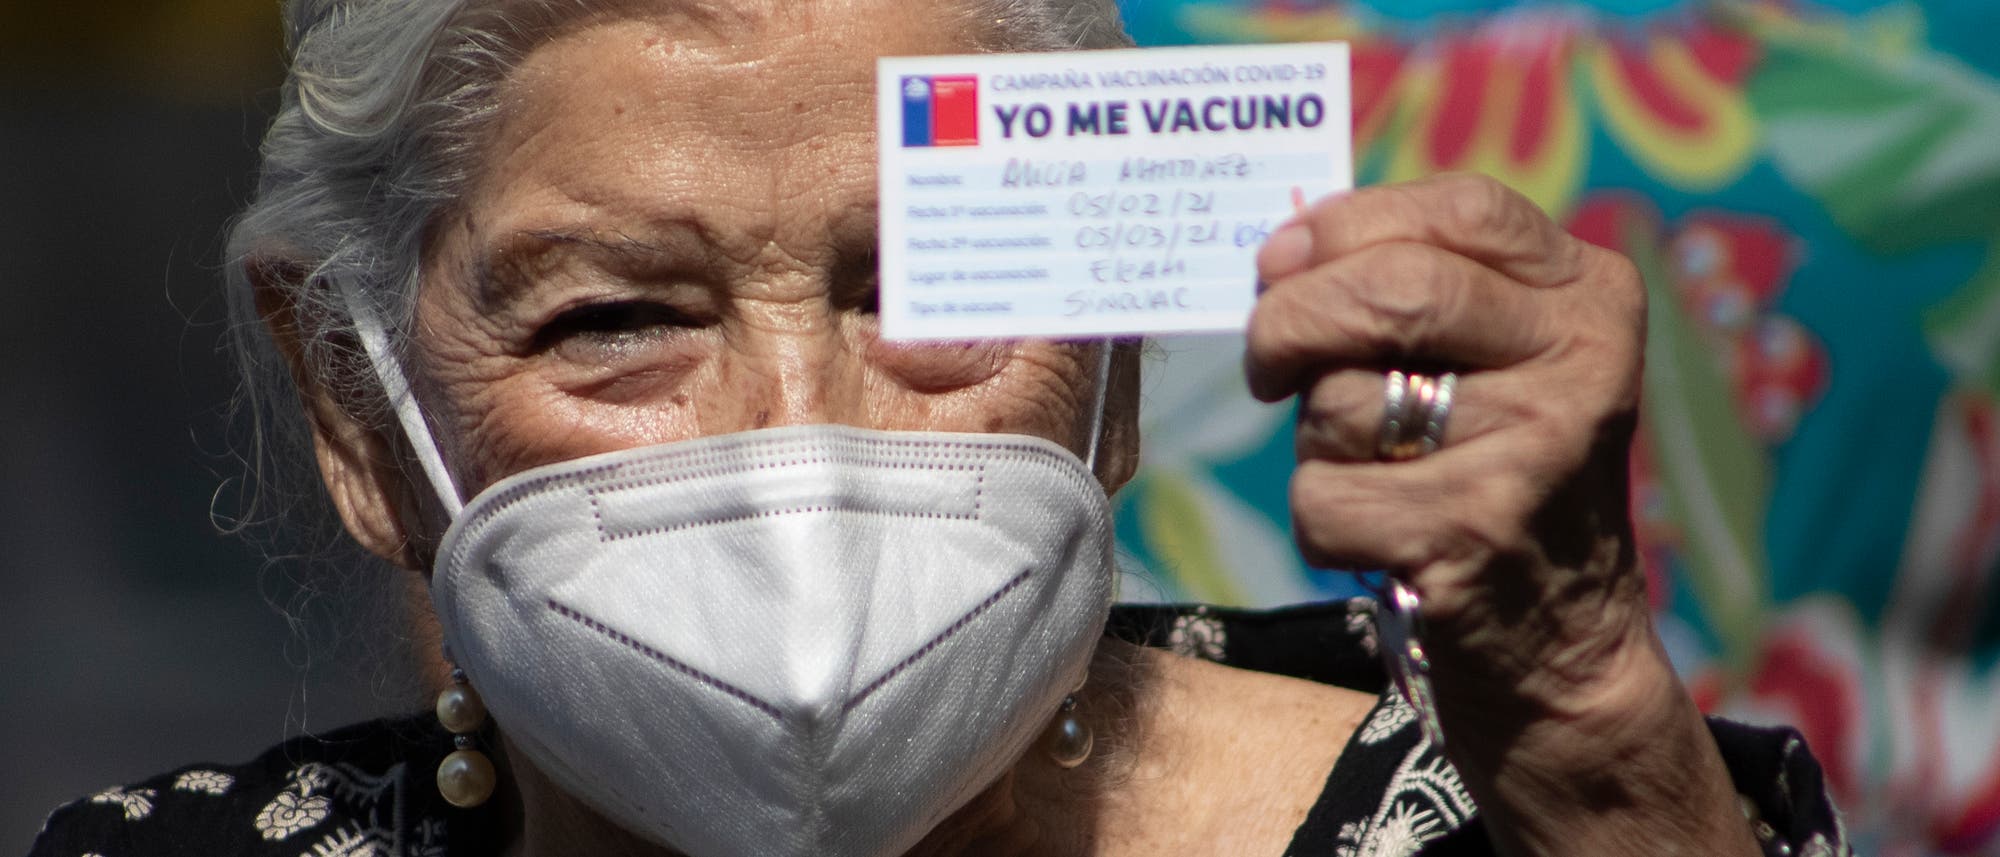 »Ich lasse mich impfen« steht auf dem Impfausweis der chilenischen Impfkampagne